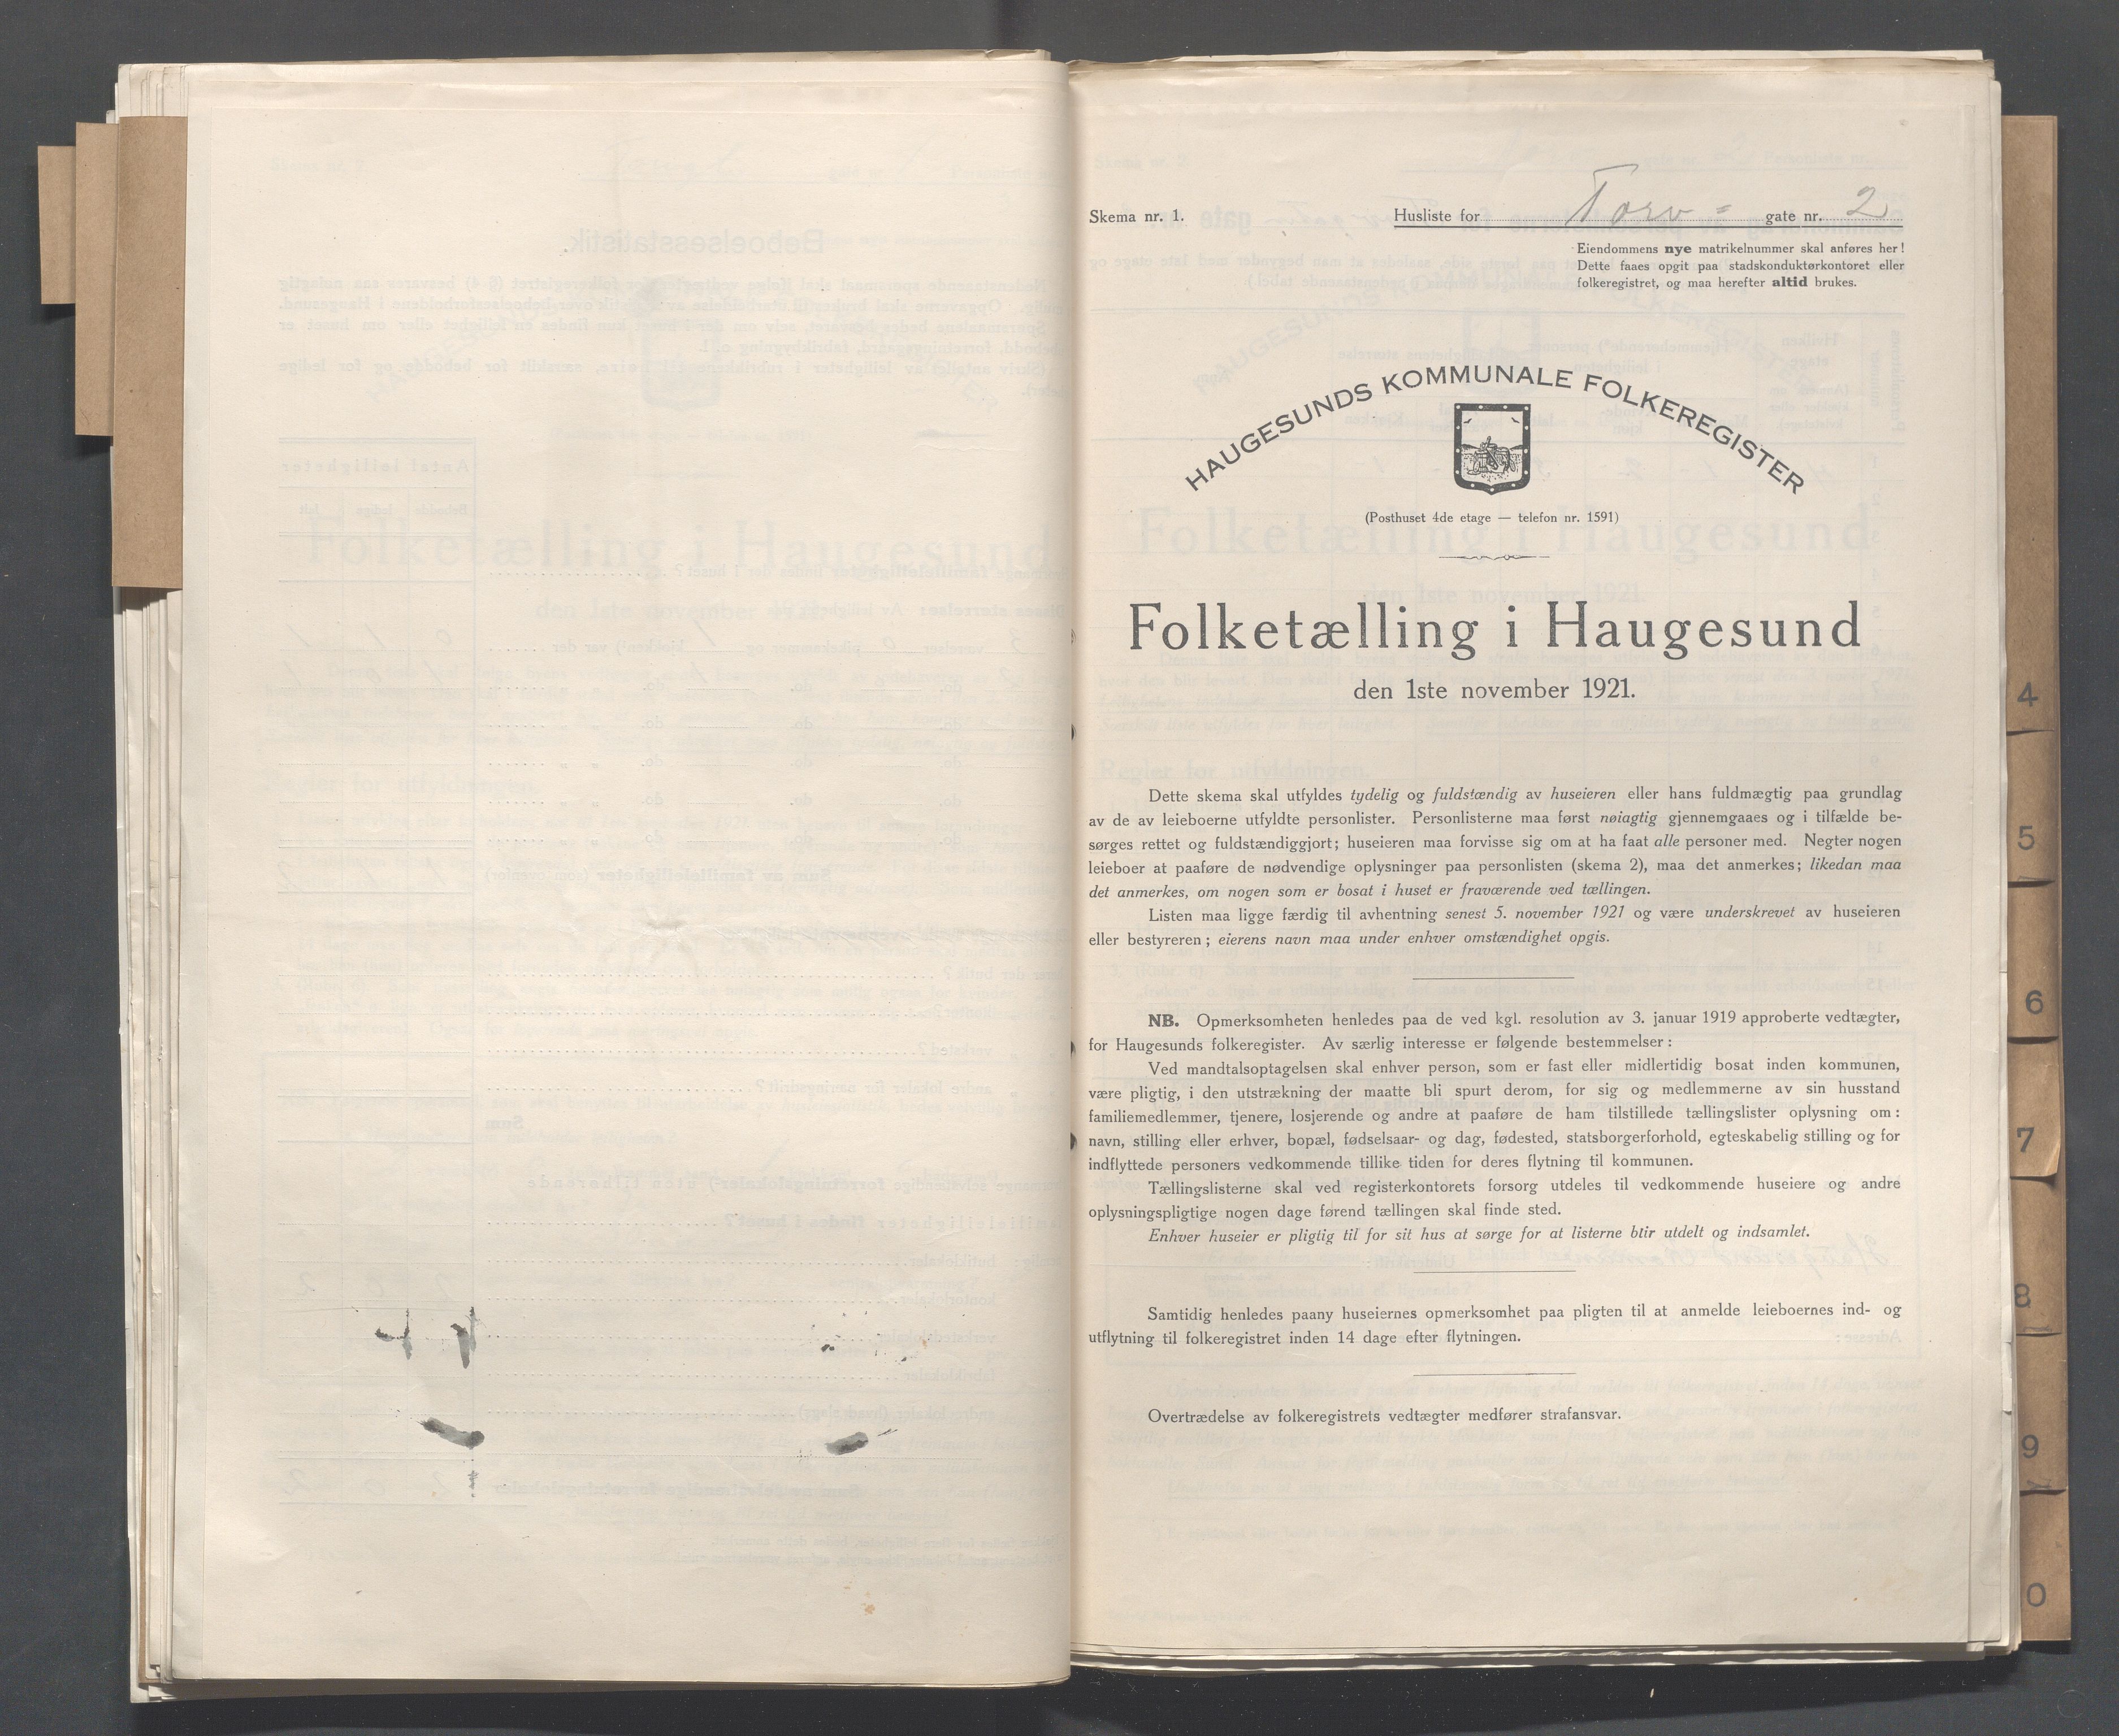 IKAR, Local census 1.11.1921 for Haugesund, 1921, p. 5440